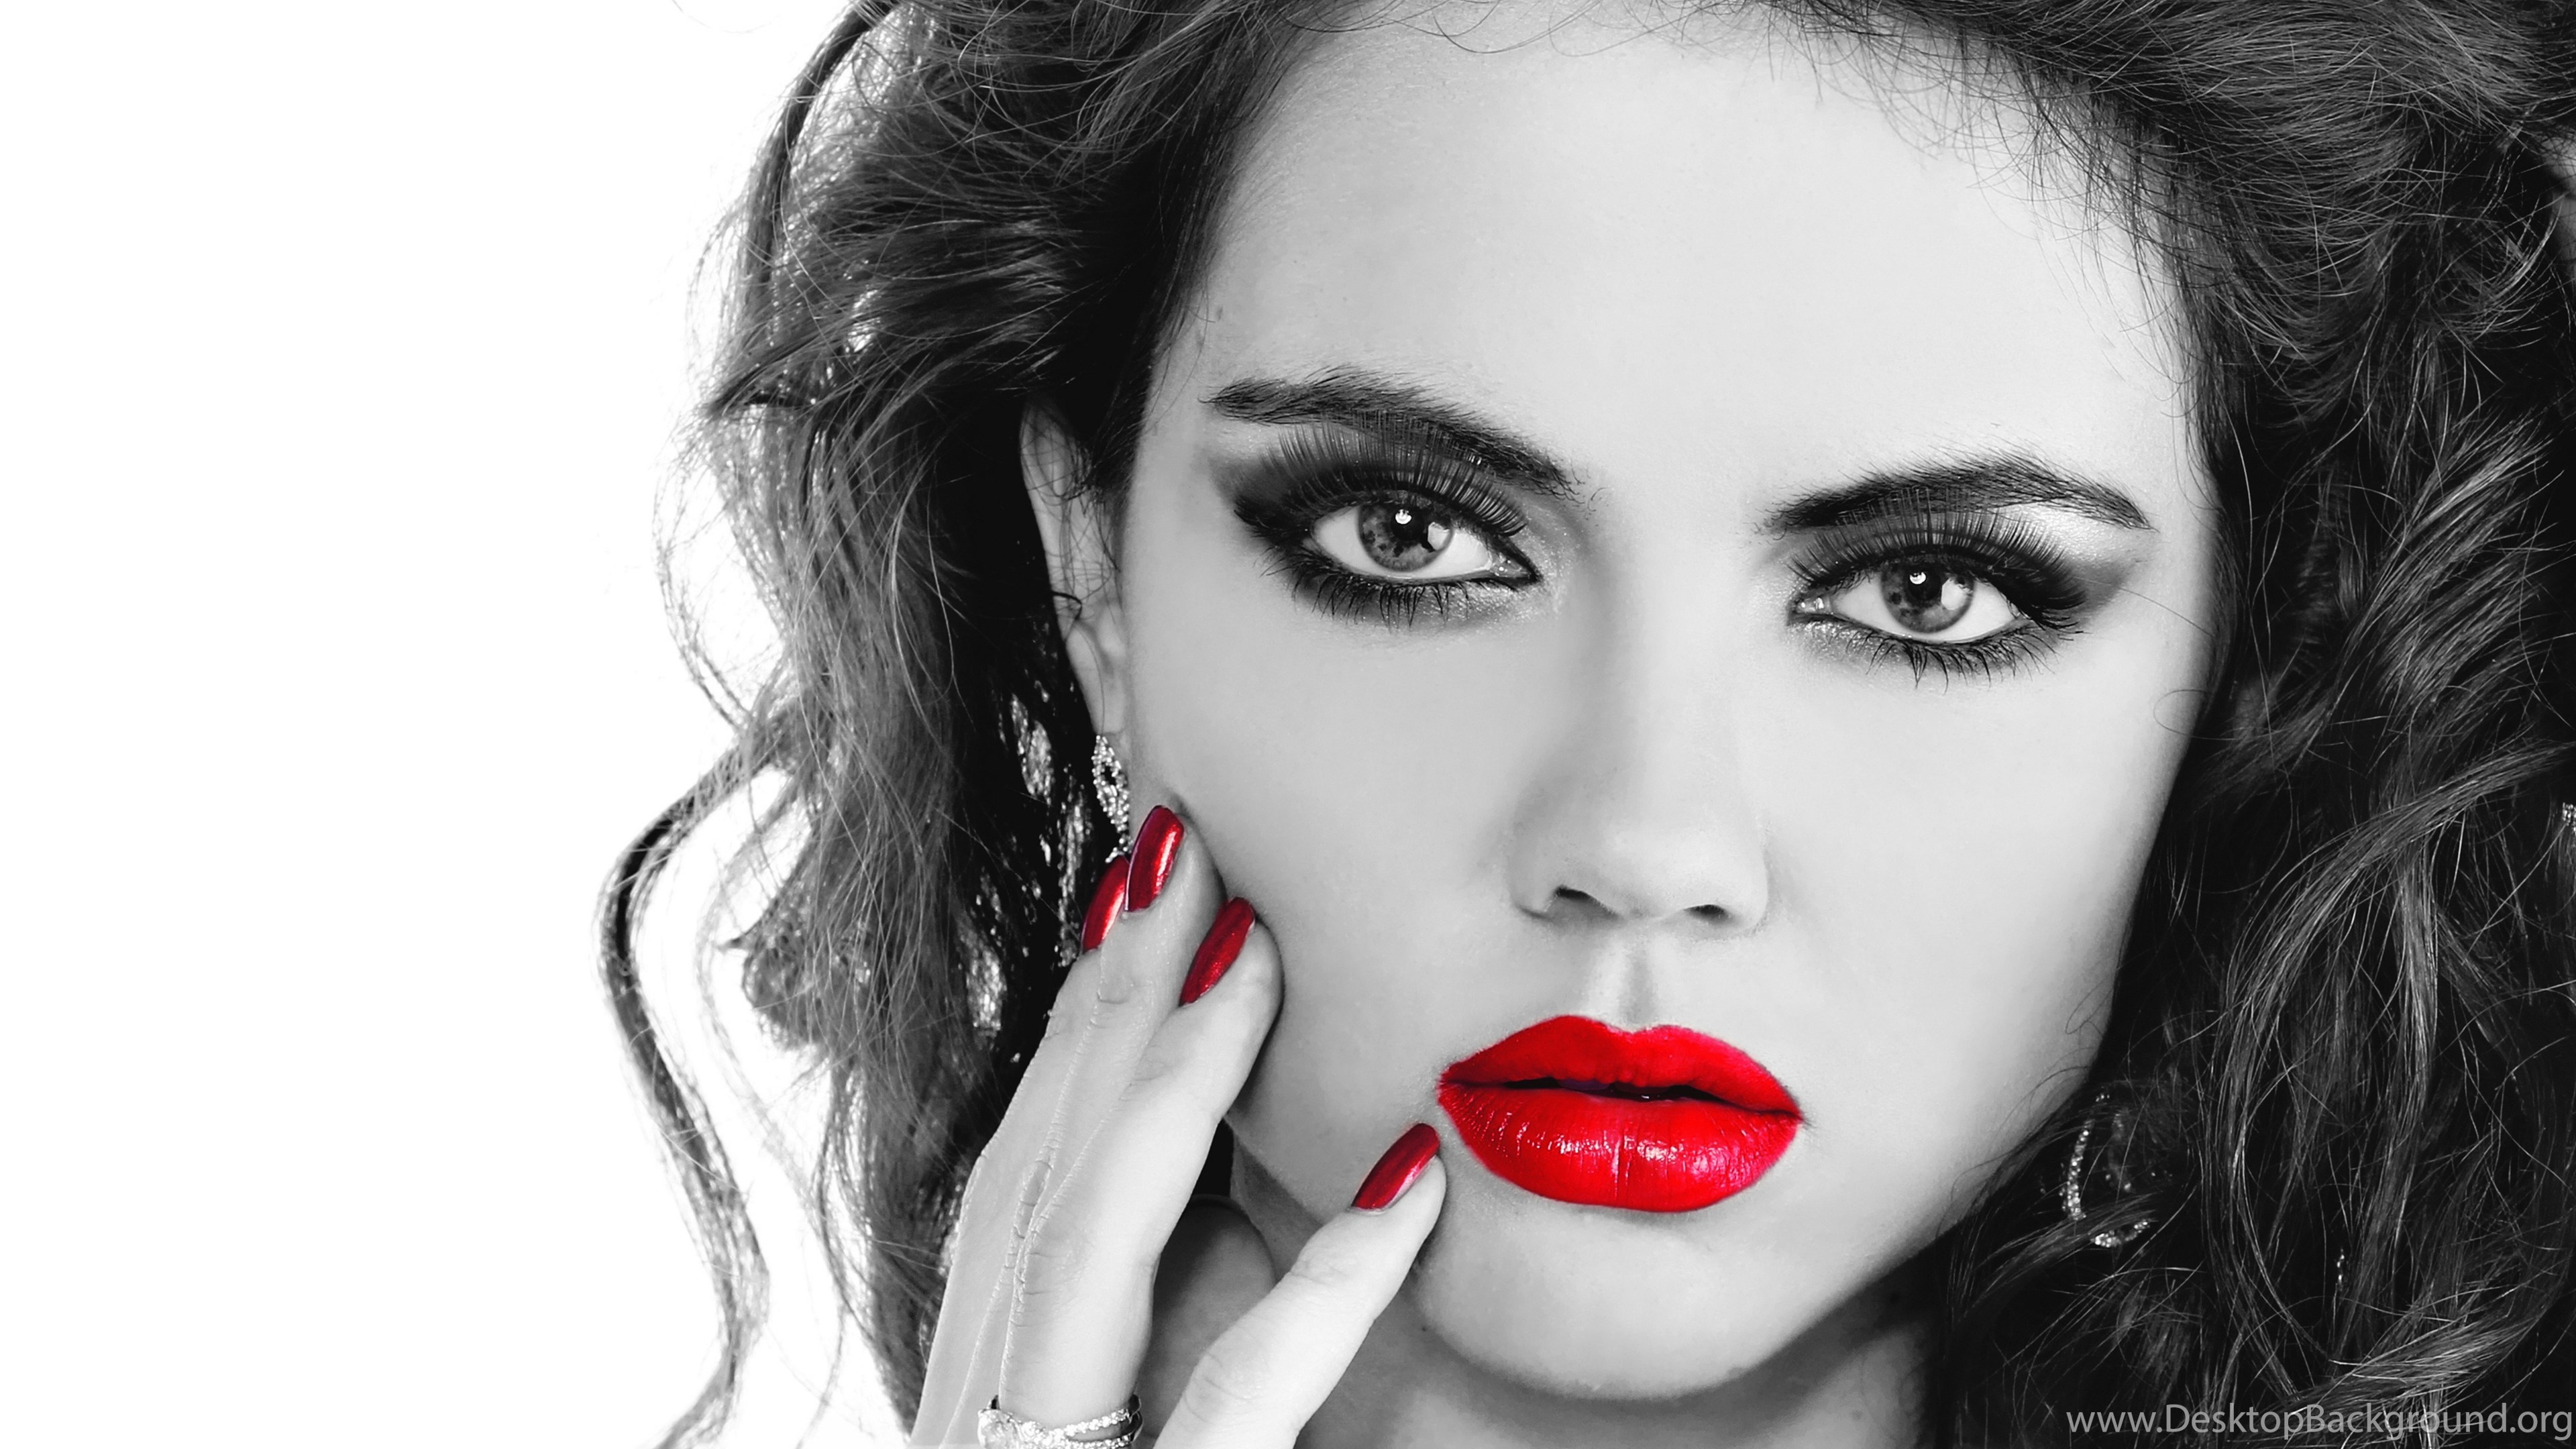 Download Wallpaper Girl, Make up, Red Lips, Eyelashes, Eyes, Eyes. Desktop Background